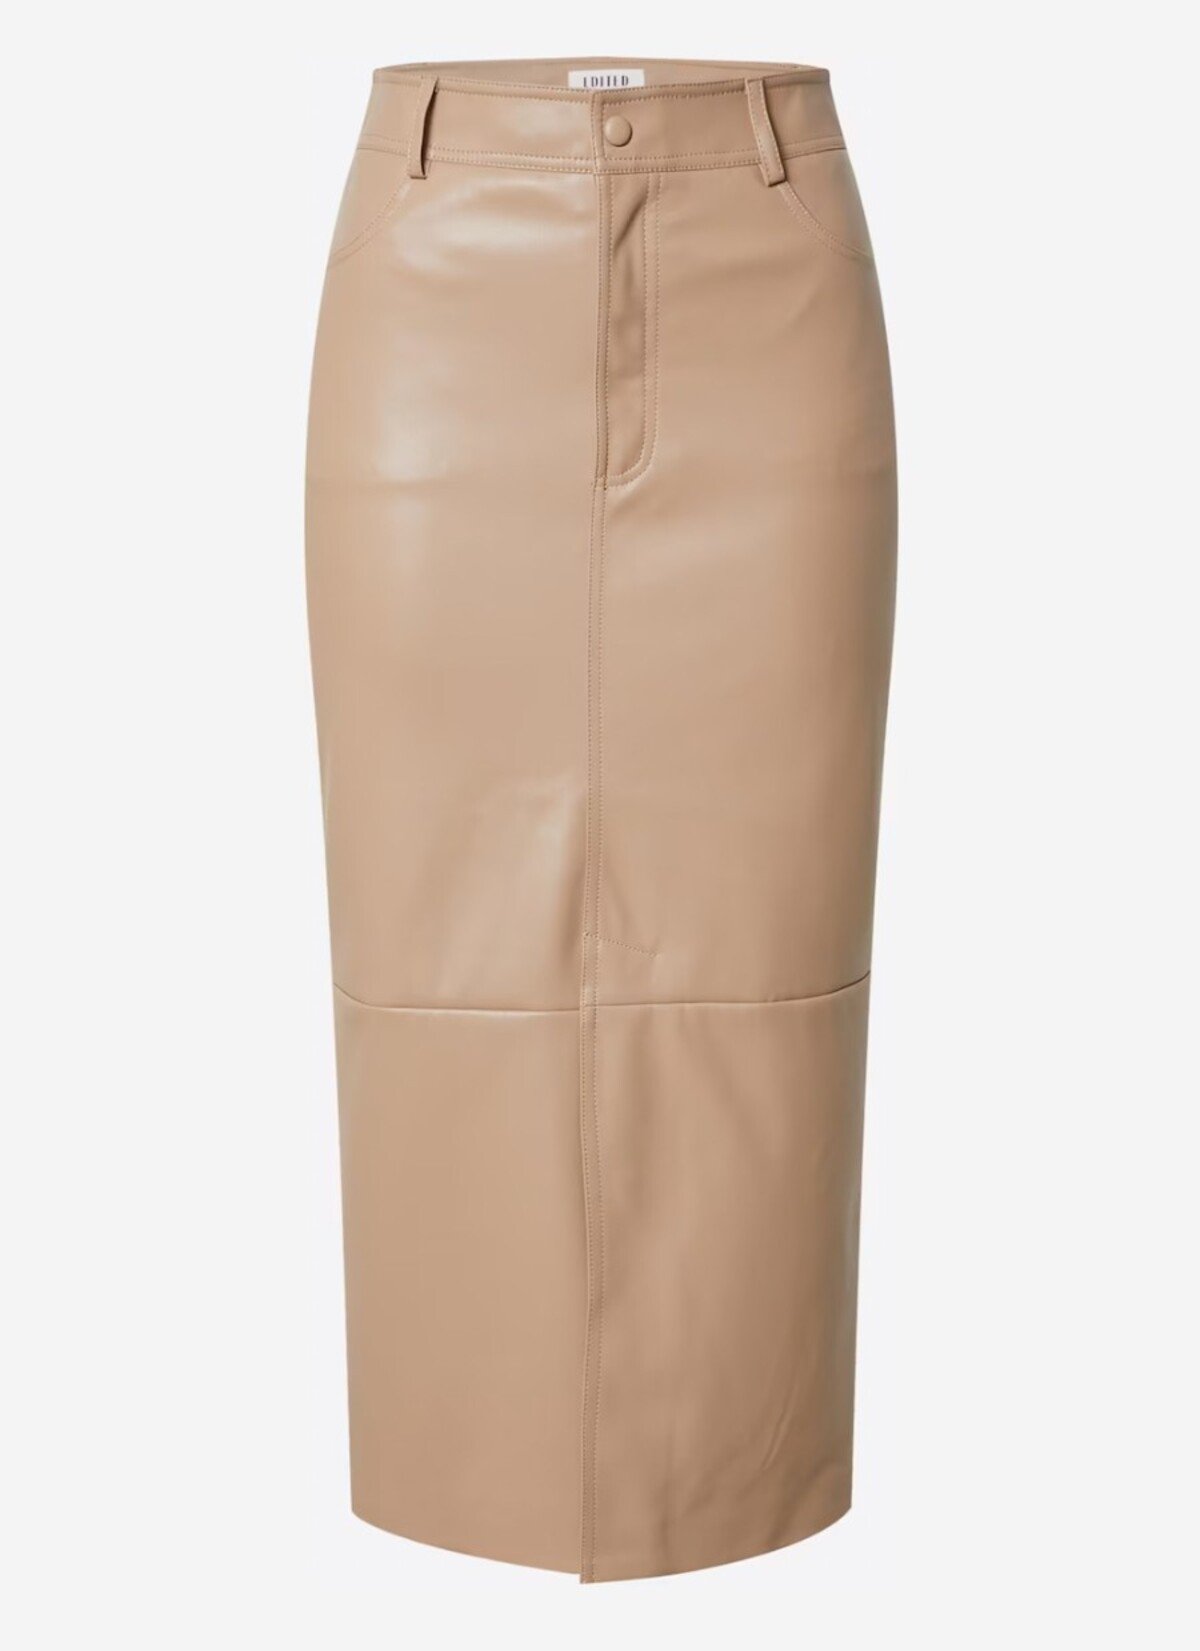 Béžová sukňa EDITED za 69,90 € je elegantným a zároveň extravagantným modelom. Pri kombinácii horného odevu, ako aj obuvi môžeš hodiť pravidlá za hlavu.